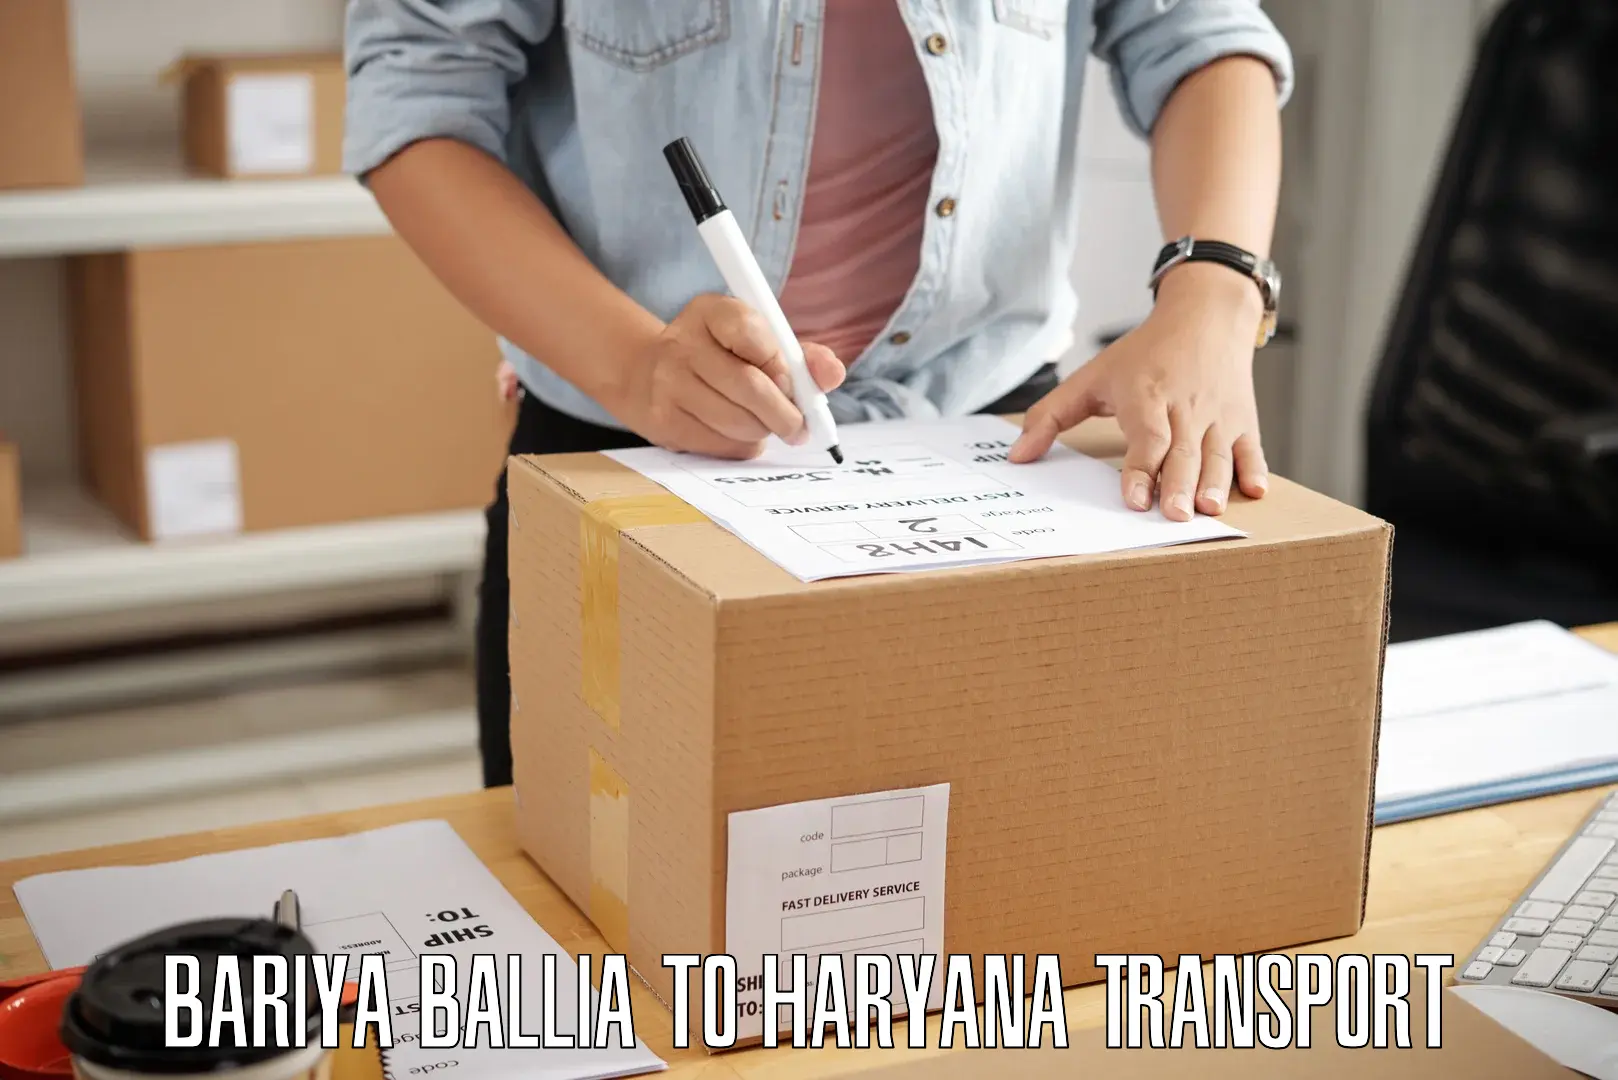 Furniture transport service Bariya Ballia to Mahendragarh